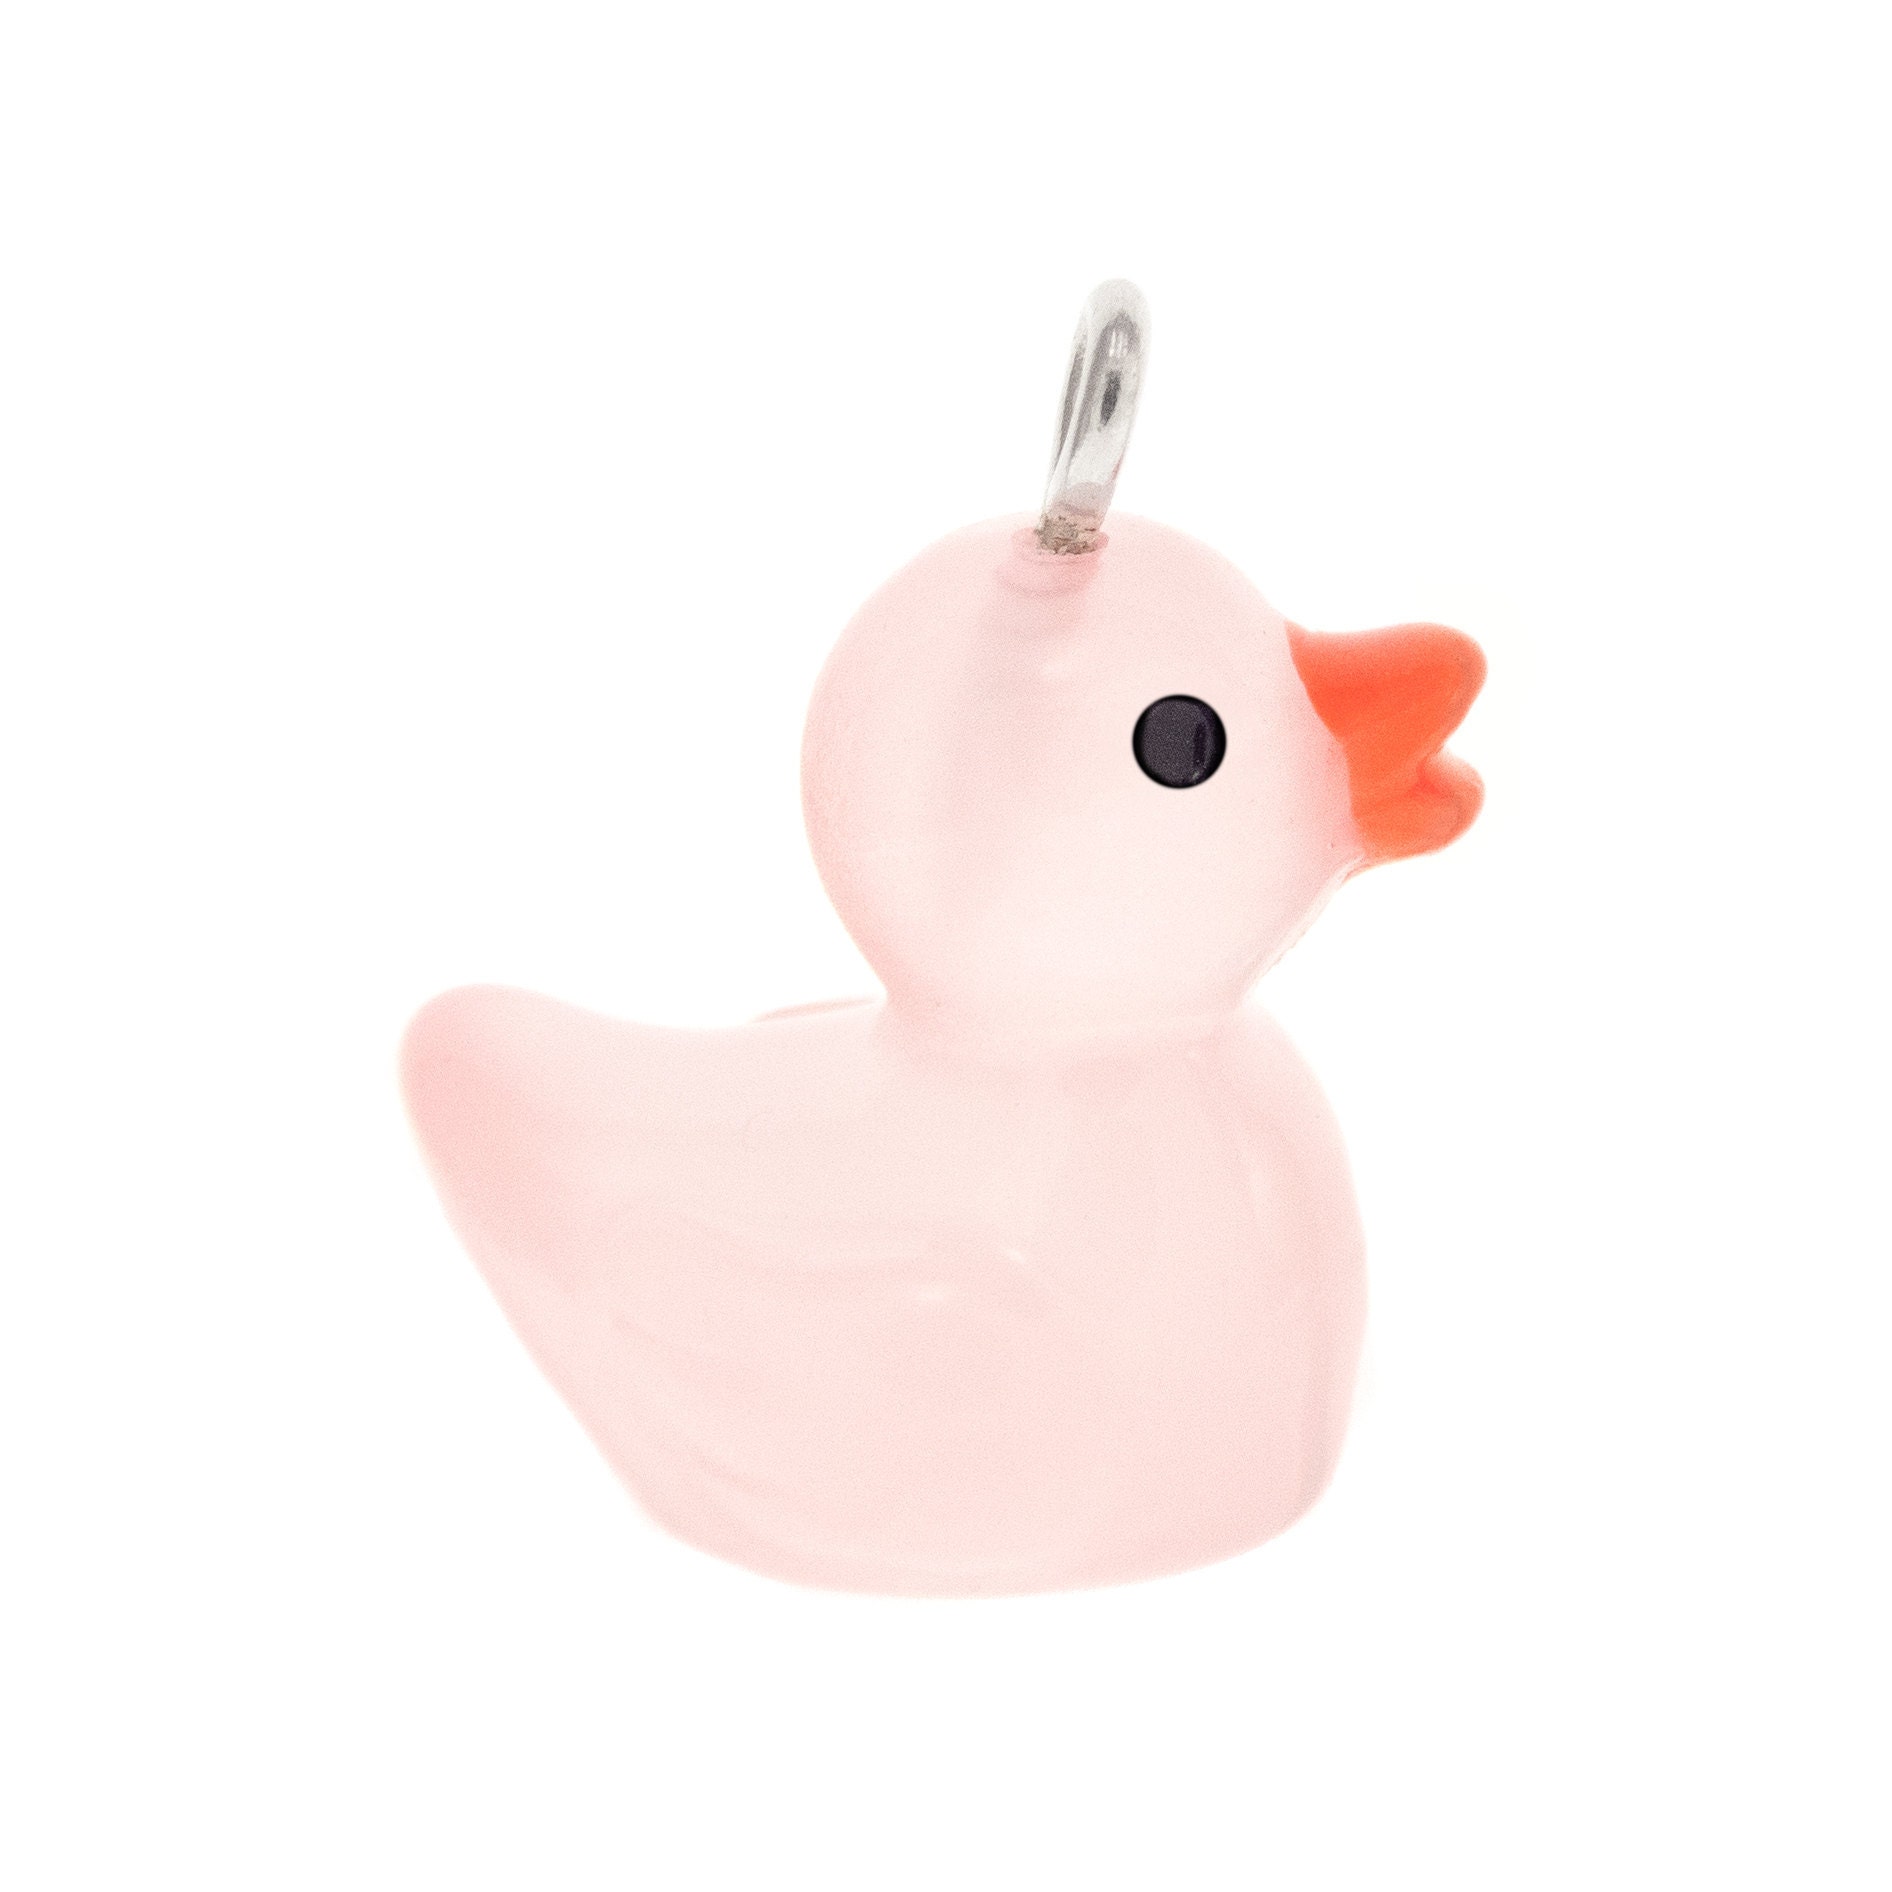 Rubber Duck Keychain Pink